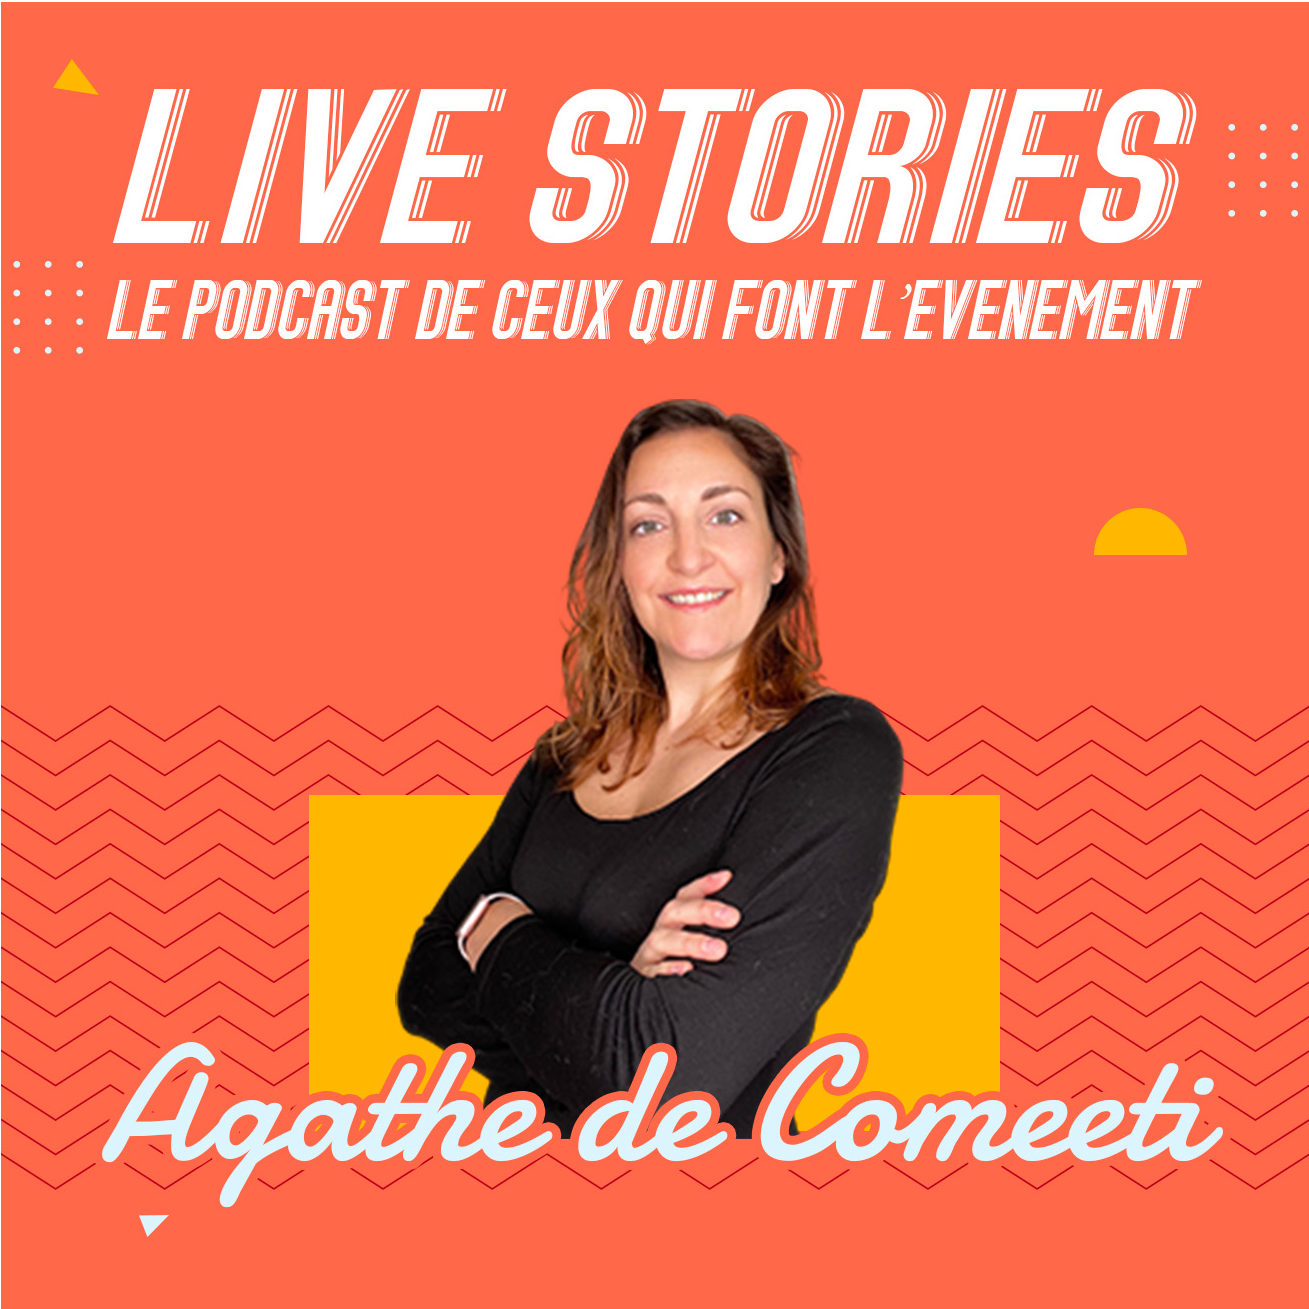 Live Stories, le podcast de ceux qui font l'événement